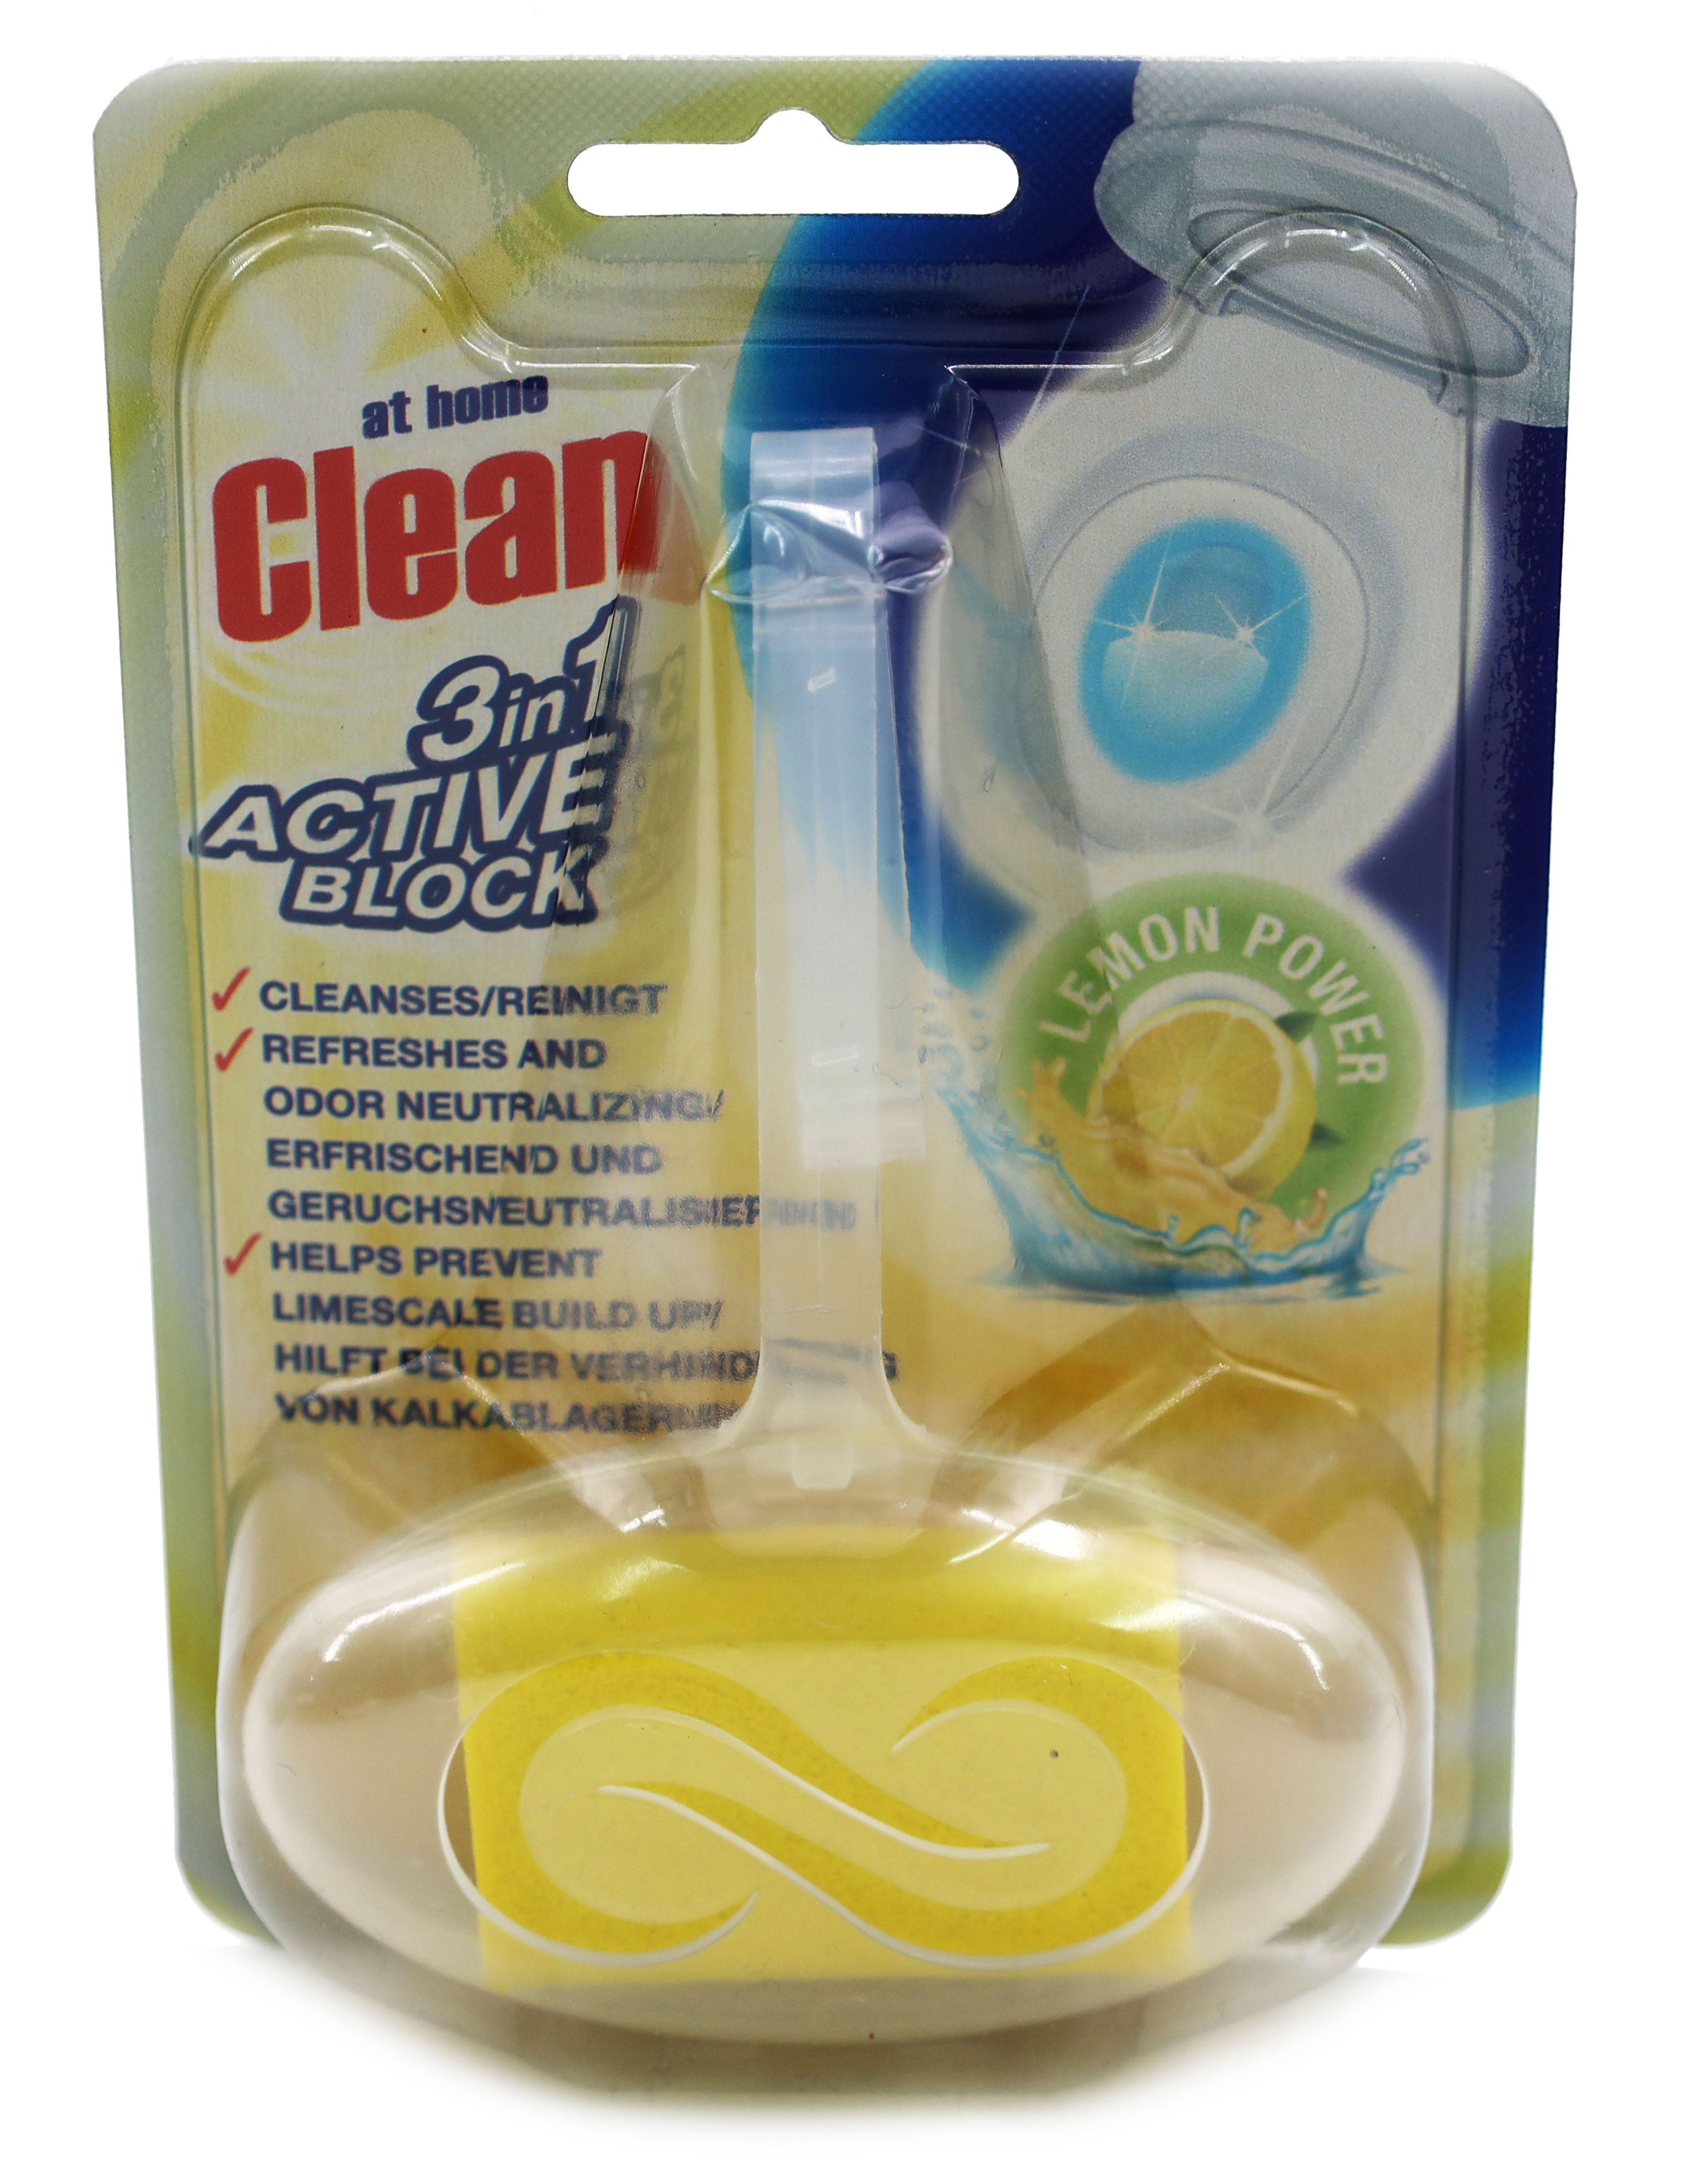 At Home Clean WC Stein 40g Lemon